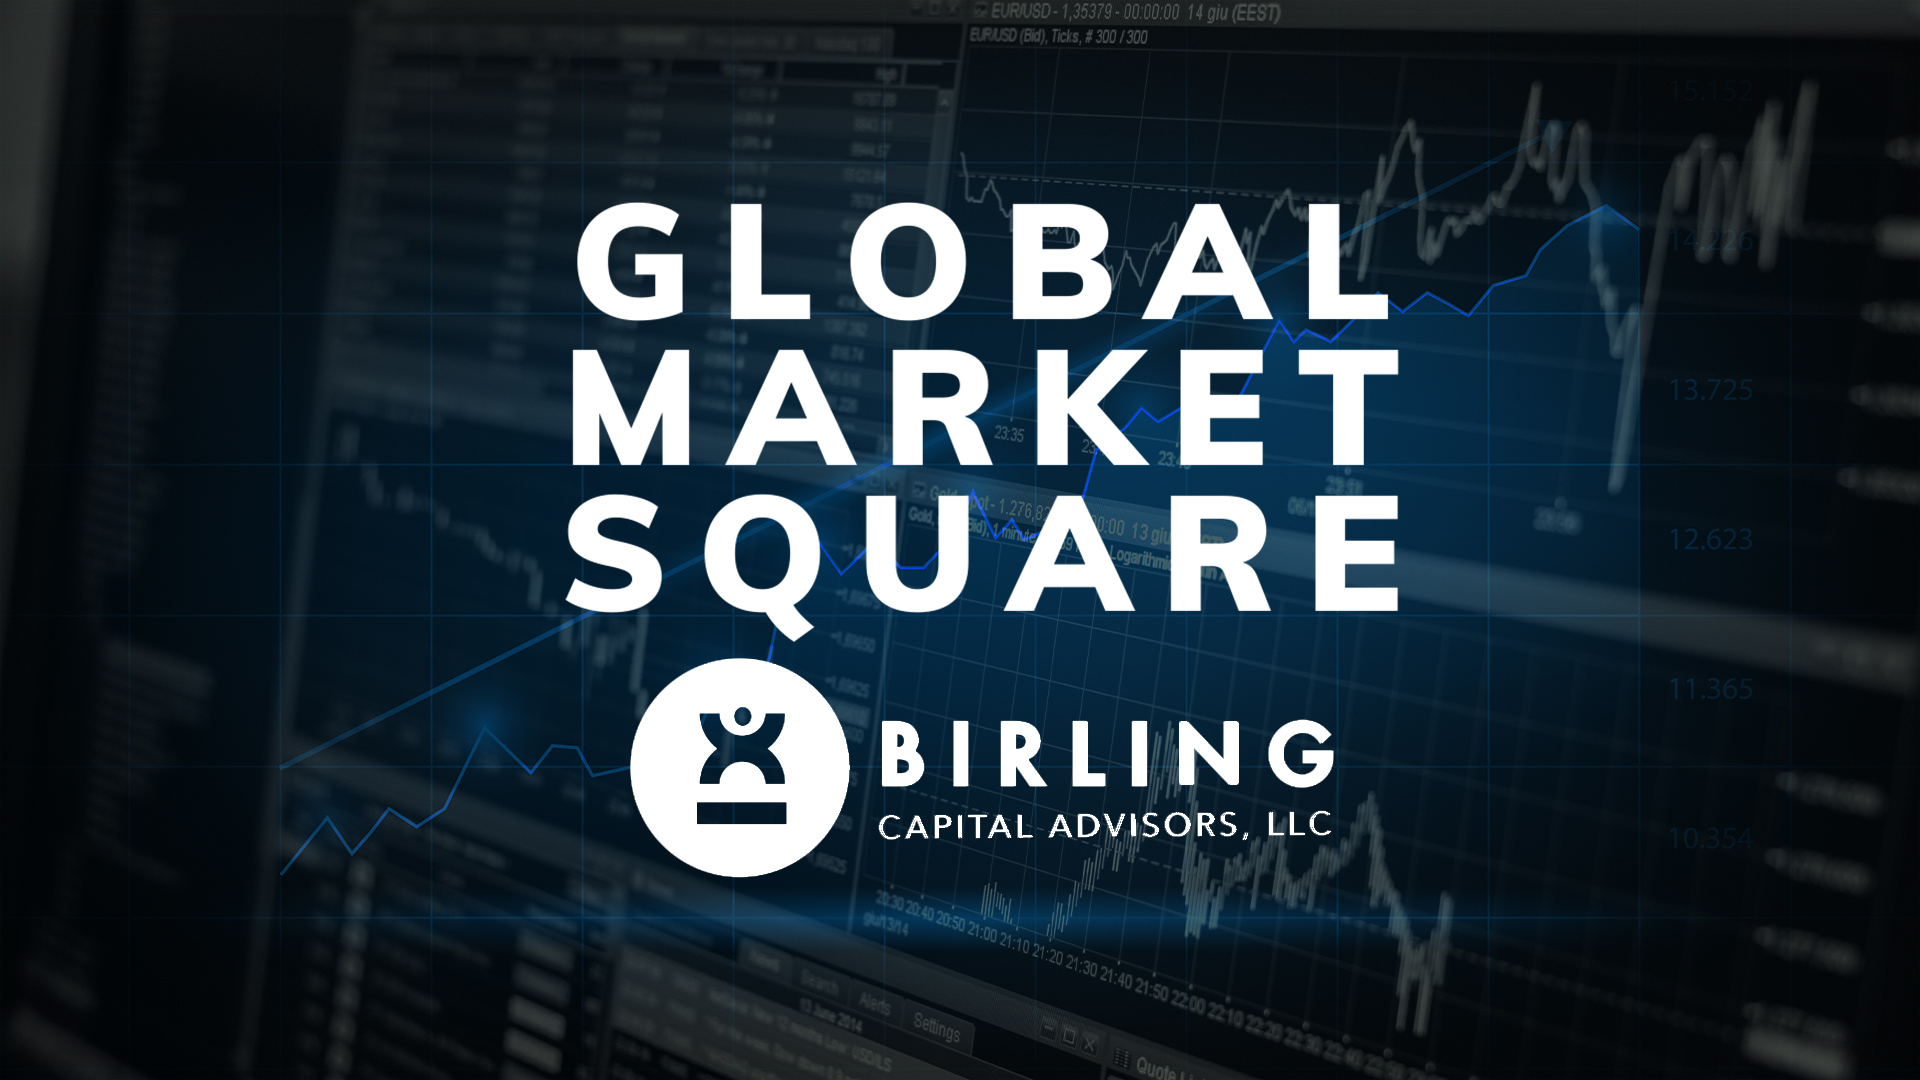 Preocupante caída de -1.82% del Índice de Gerentes de Compra (PMI) arrastra a Wall Street hacia terreno negativo, Global Market Square presentado por Birling Capital